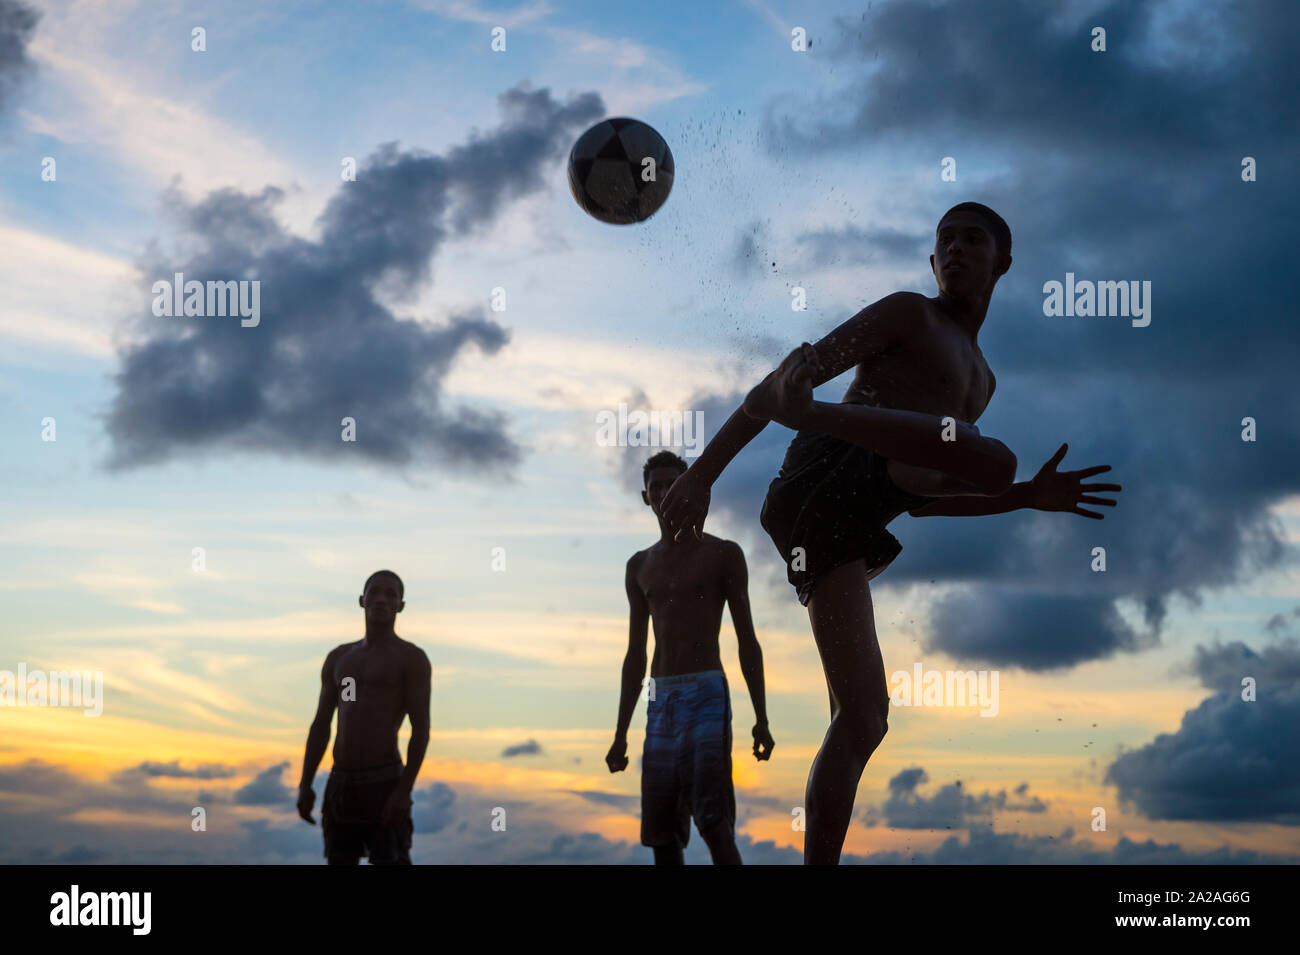 BAHIA, Brasile - 15 febbraio 2018: giovani uomini giocare un gioco informale di calcio sulla spiaggia keepy-uppy in silhouette sulla riva di un tramonto sulla spiaggia. Foto Stock